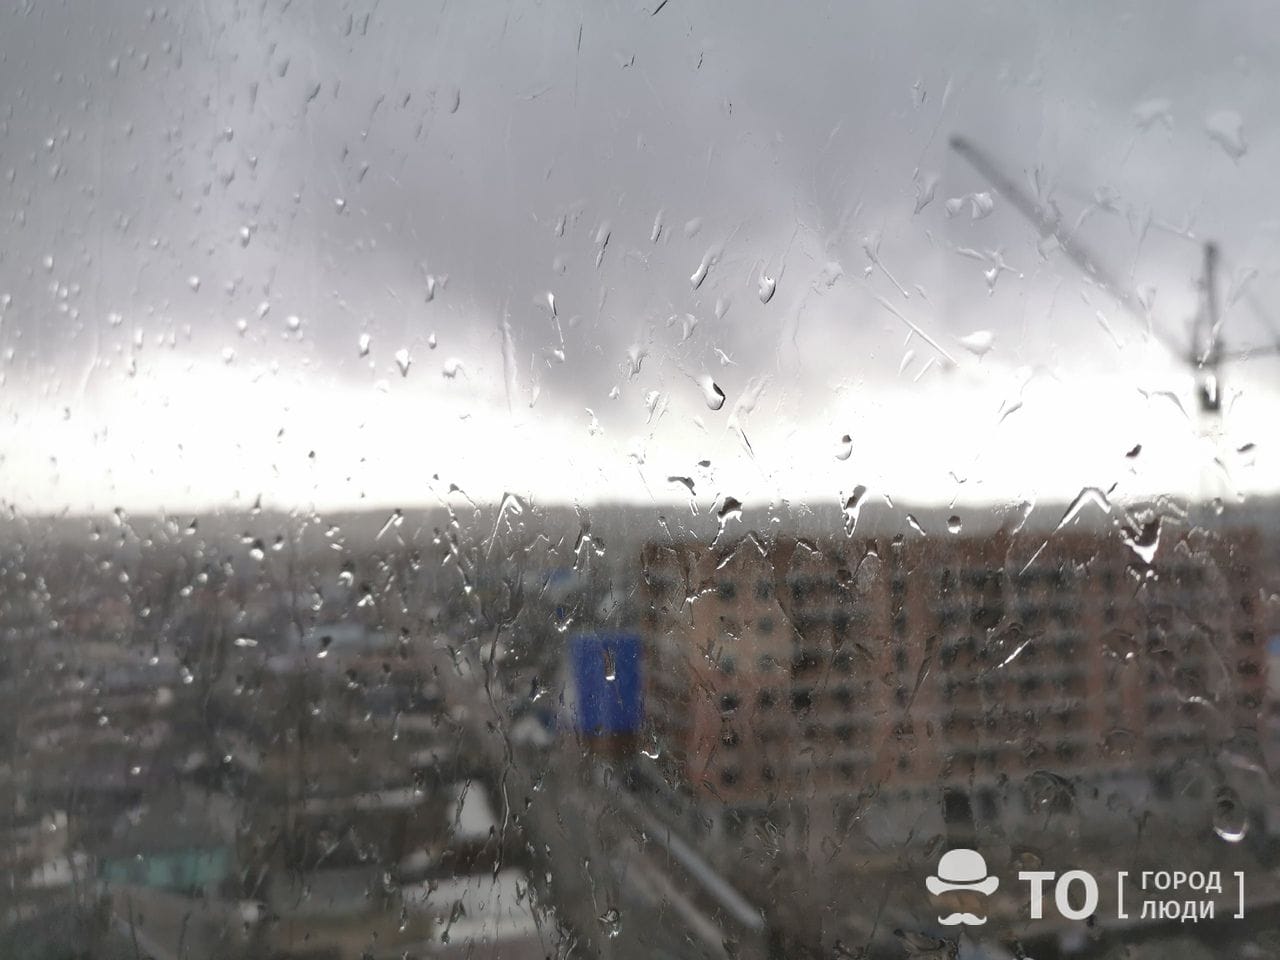 Погода и природа, Томские новости, прогноз погоды погода в томске сильный ветер гроза в томске град Томичей предупреждают о сильном ветре